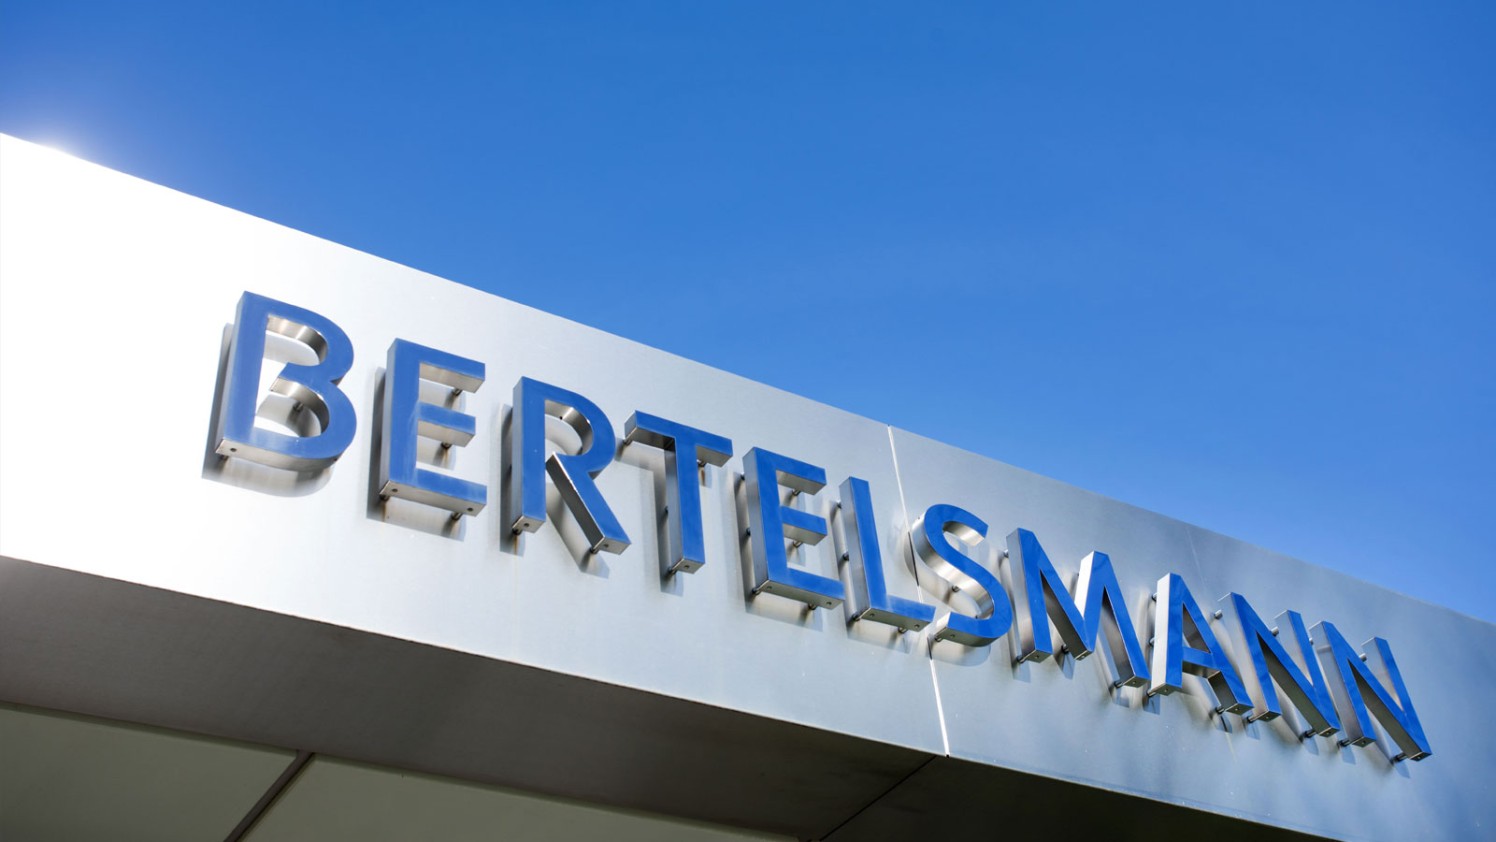 bertelsmann-corporatecenter-2017-1600-900_teaser_2_3_lt_768_retina.jpg